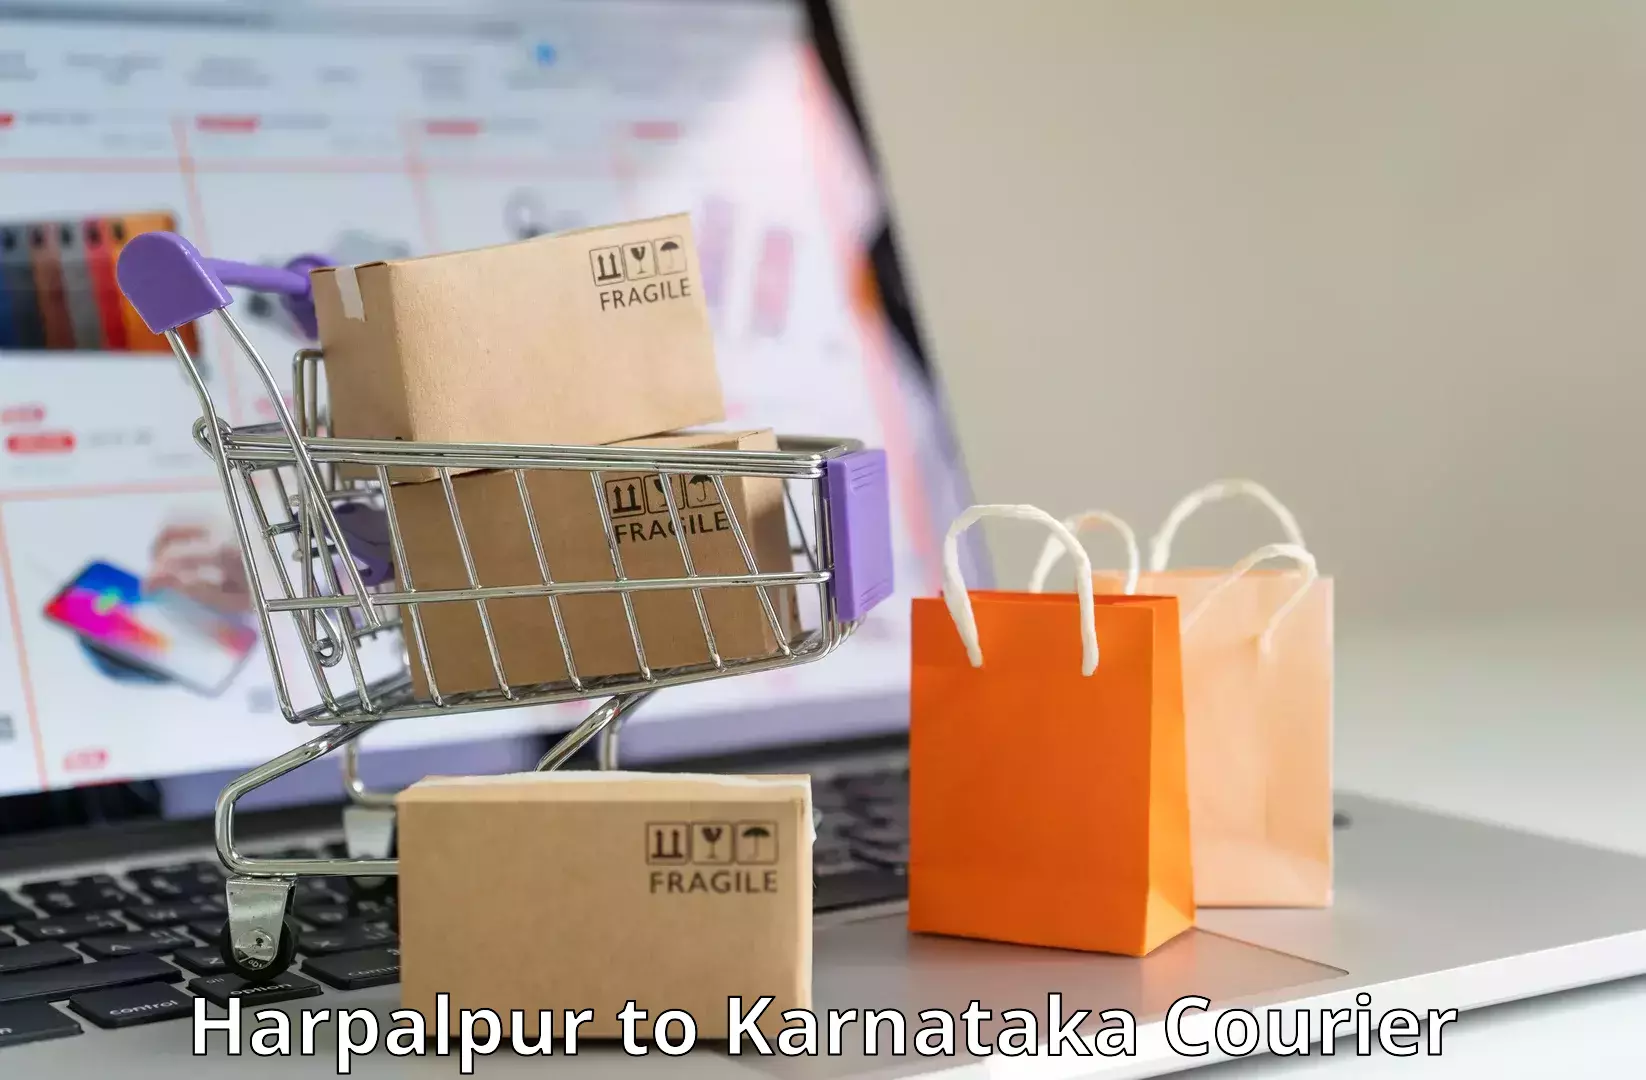 Speedy delivery service Harpalpur to Puttur